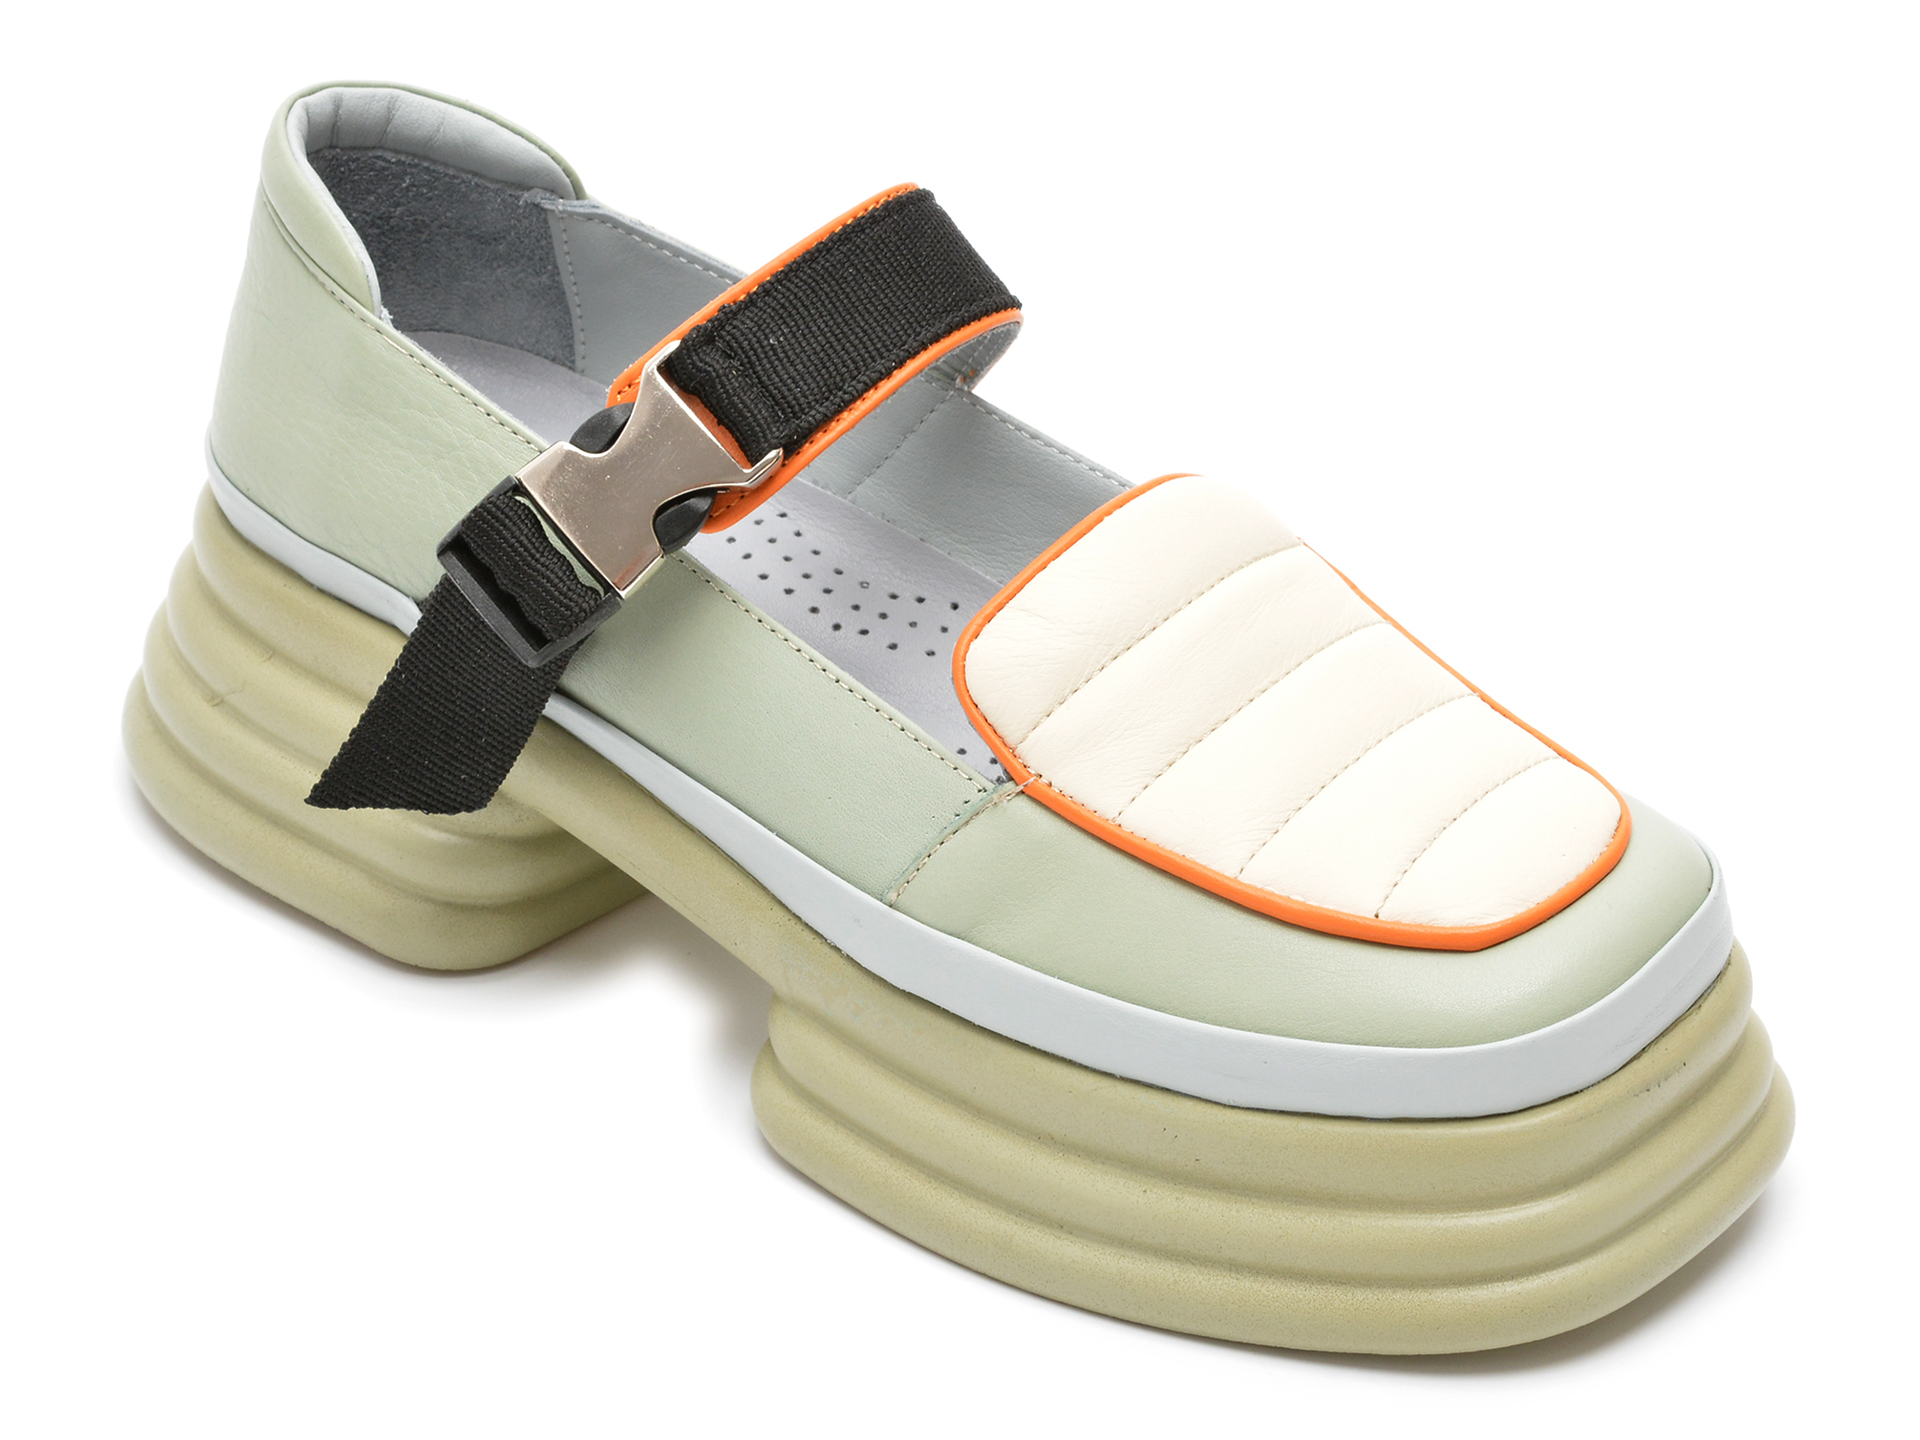 Pantofi FLAVIA PASSINI verzi, 891549, din piele naturala 2022 ❤️ Pret Super Black Friday otter.ro imagine noua 2022